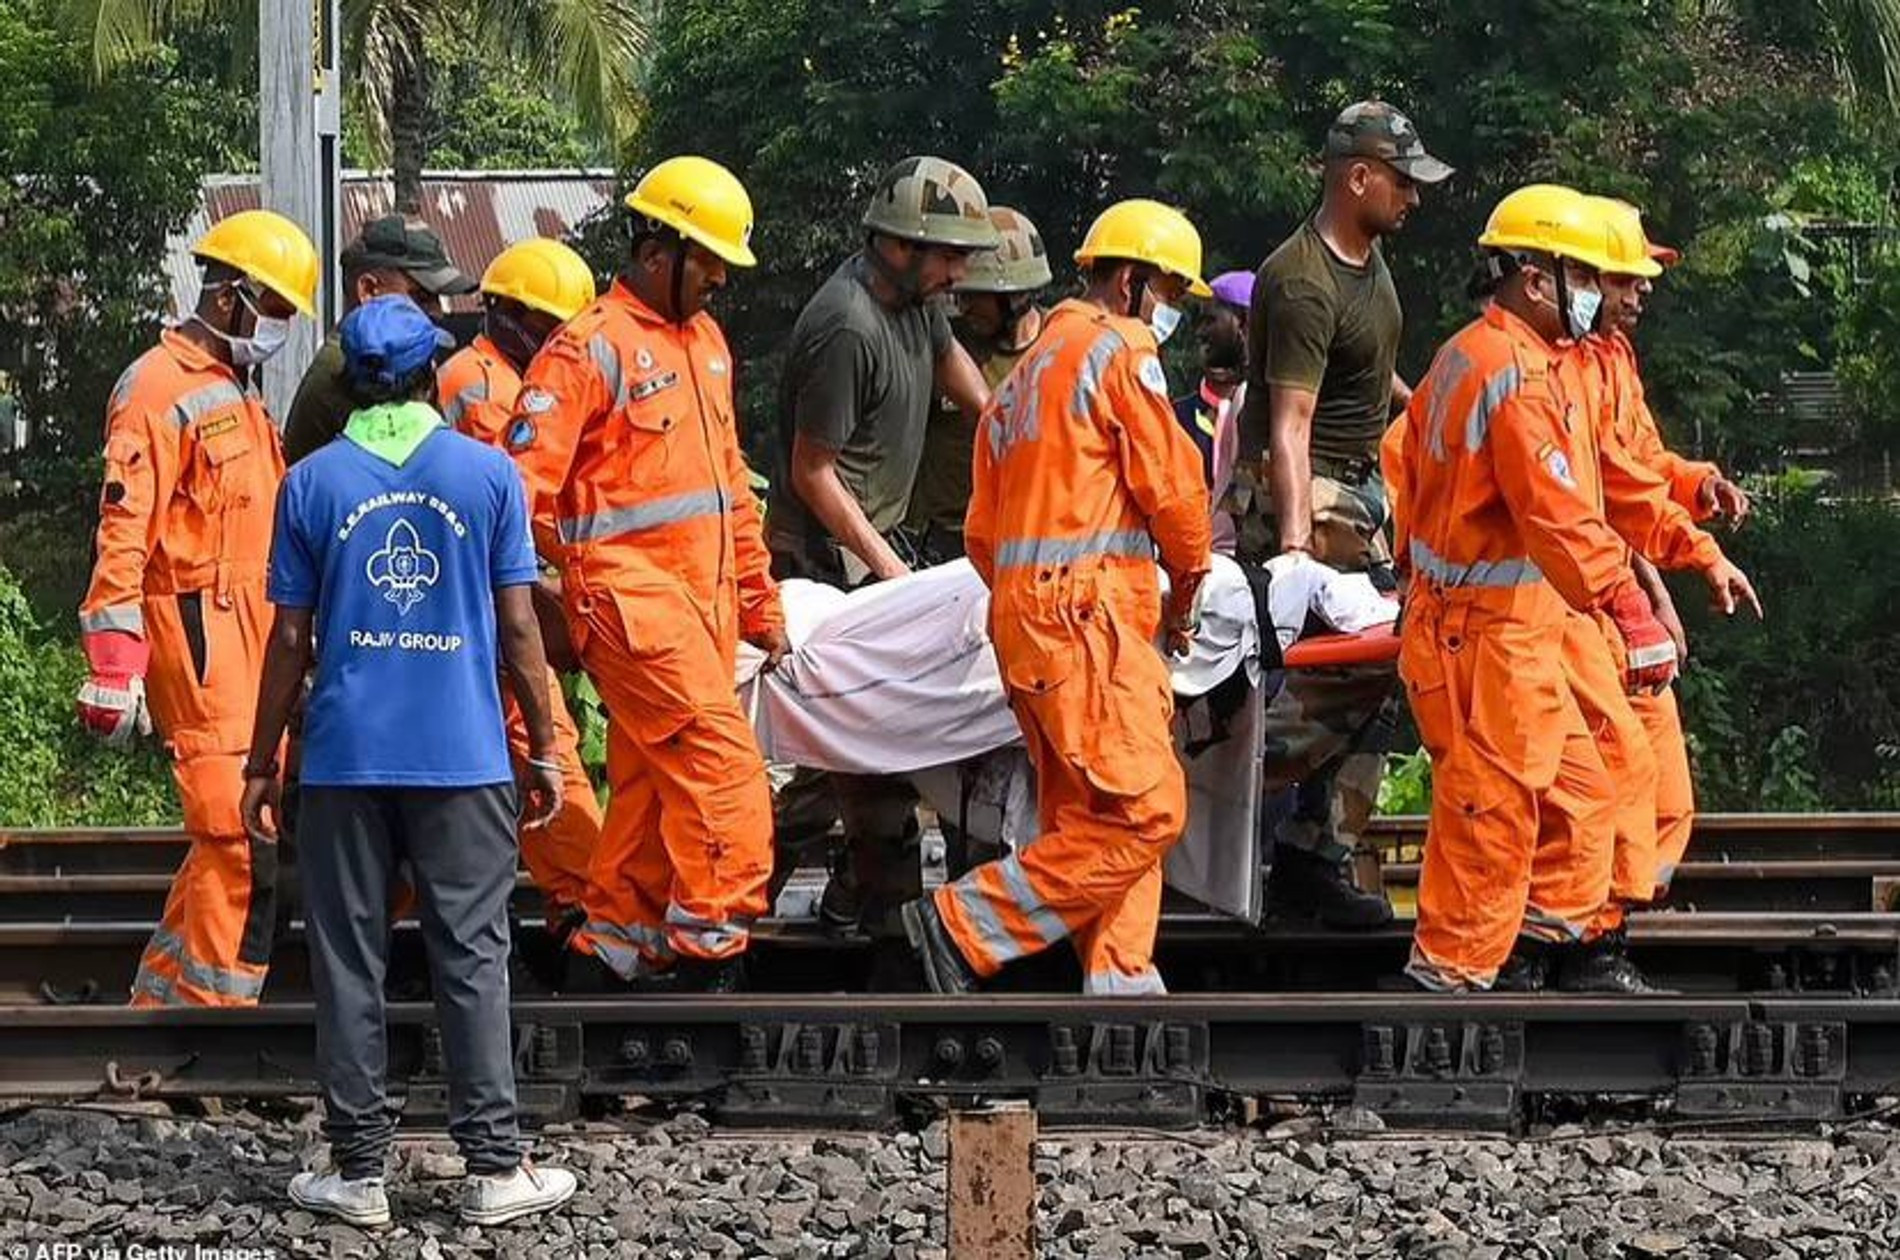 Спасатели выносят жертву аварии
Фото: Daily Mail